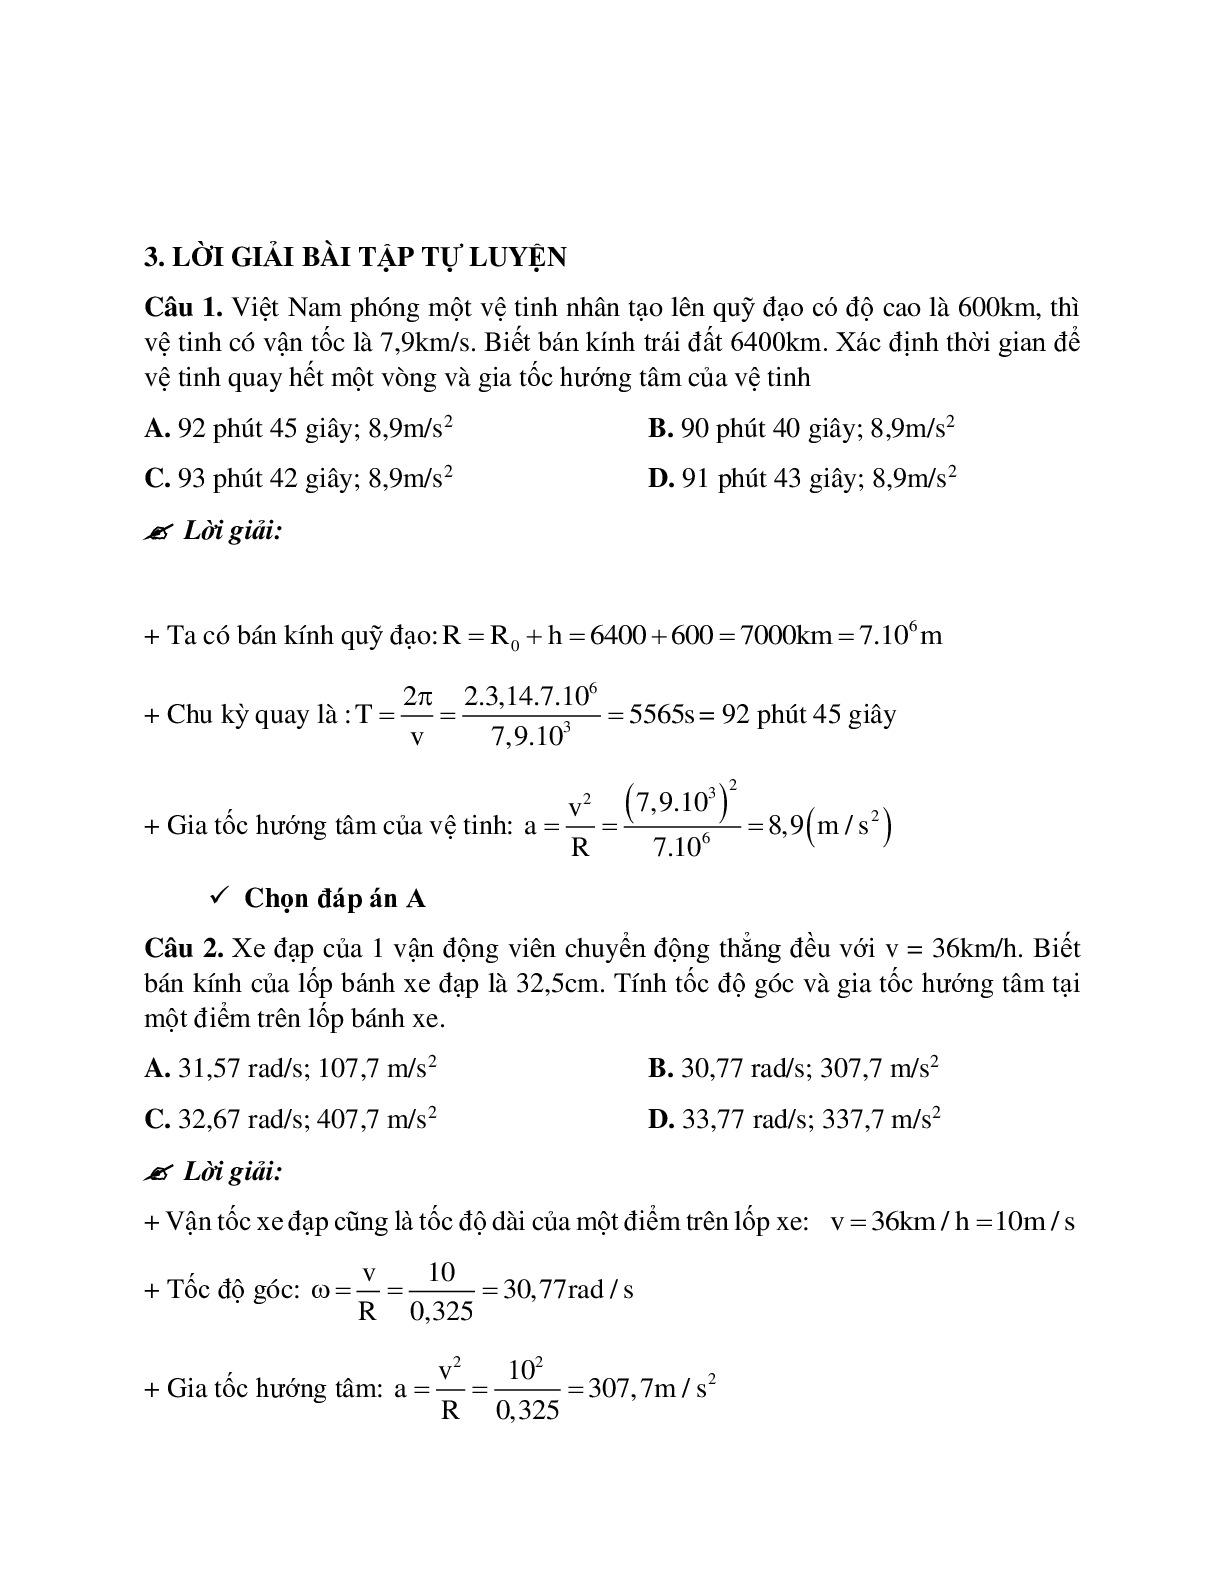 Phương pháp giải và bài tập về Các bài toán liên quan đến gia tốc hướng tâm chọn lọc (trang 5)